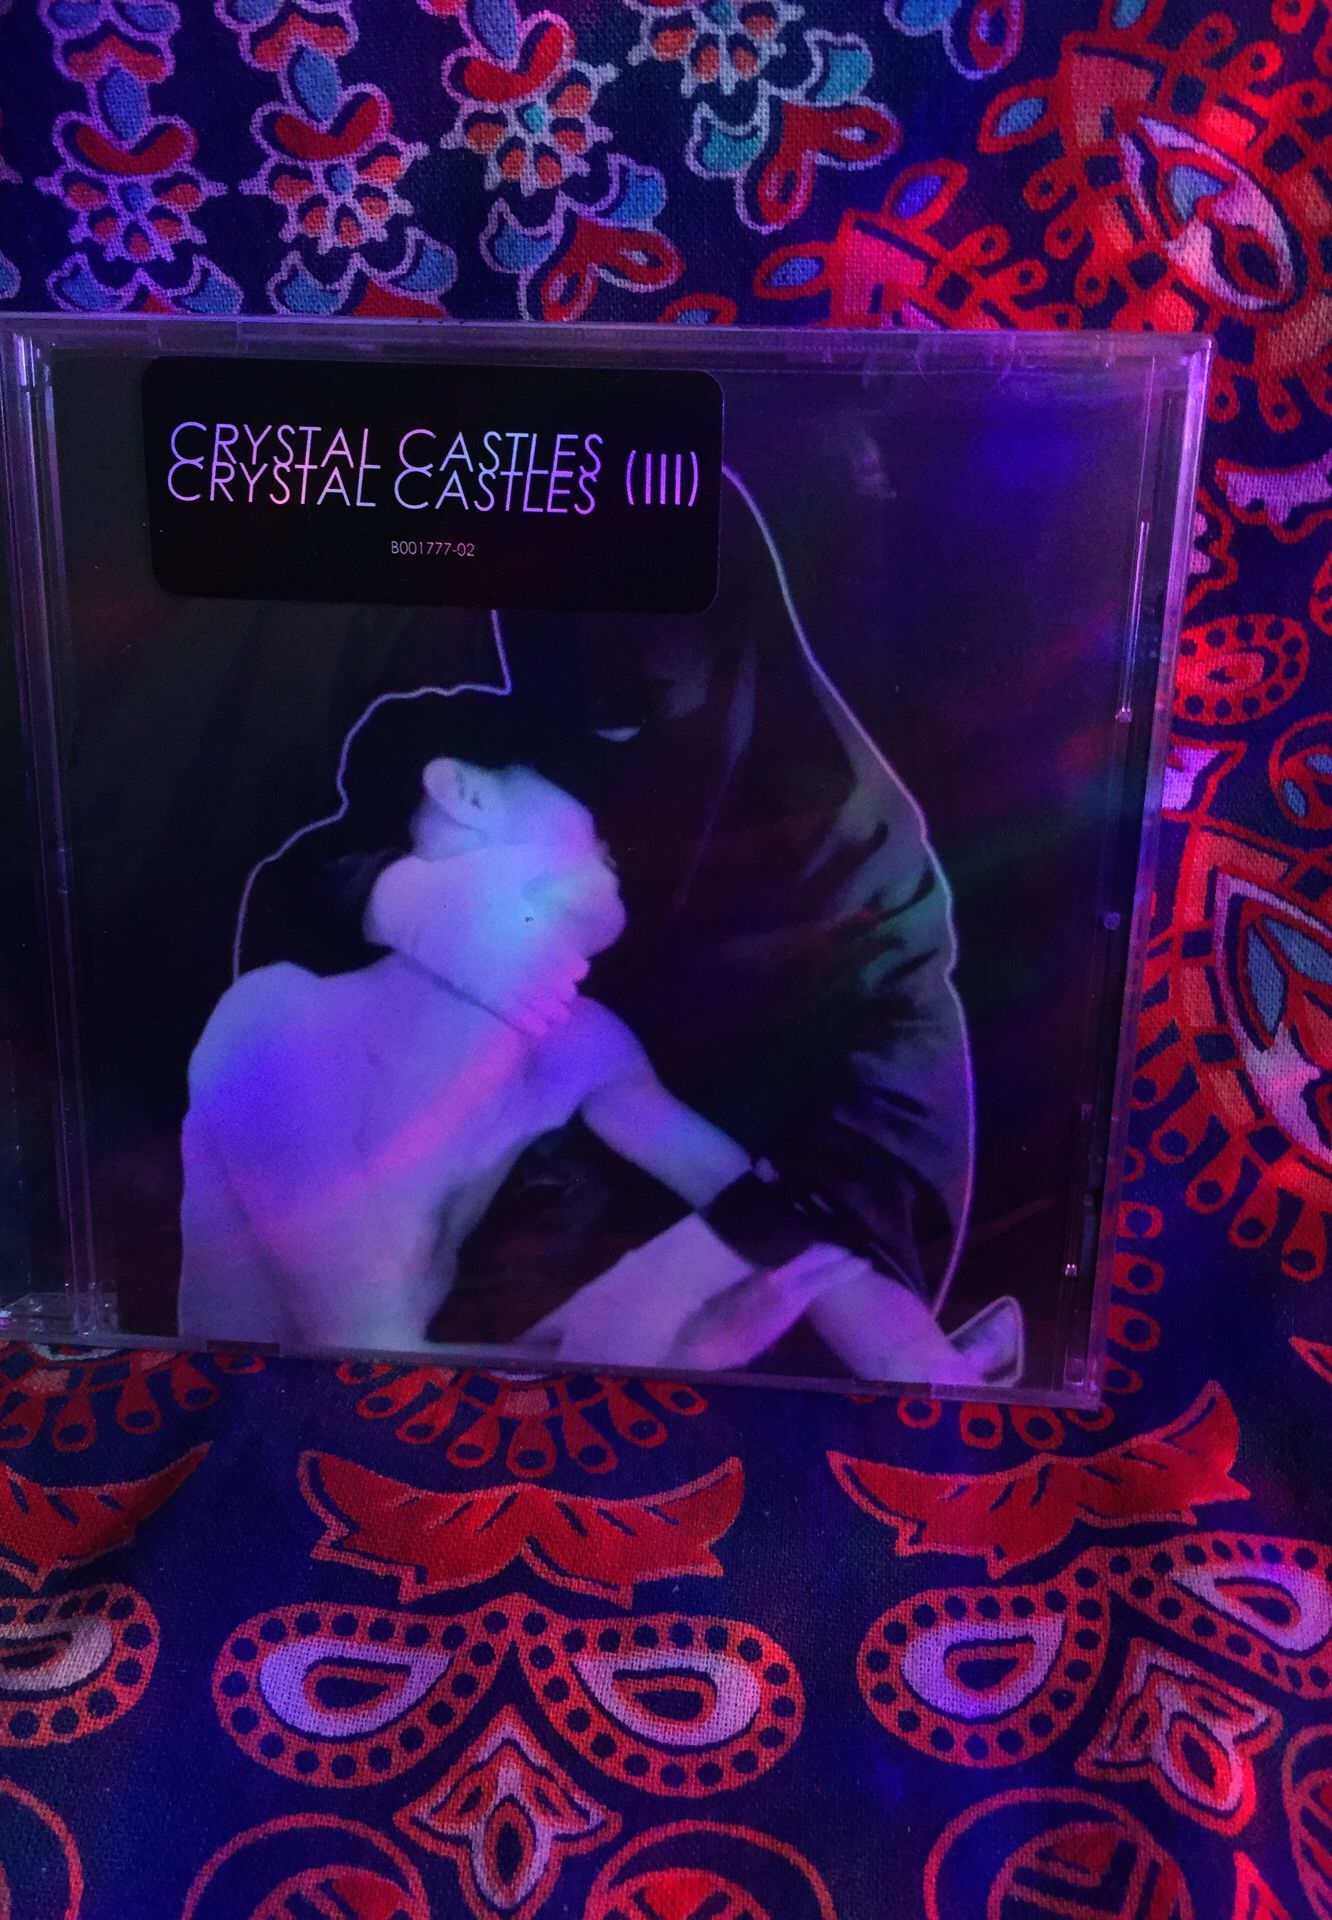 Crystal Castles - CD Album lll